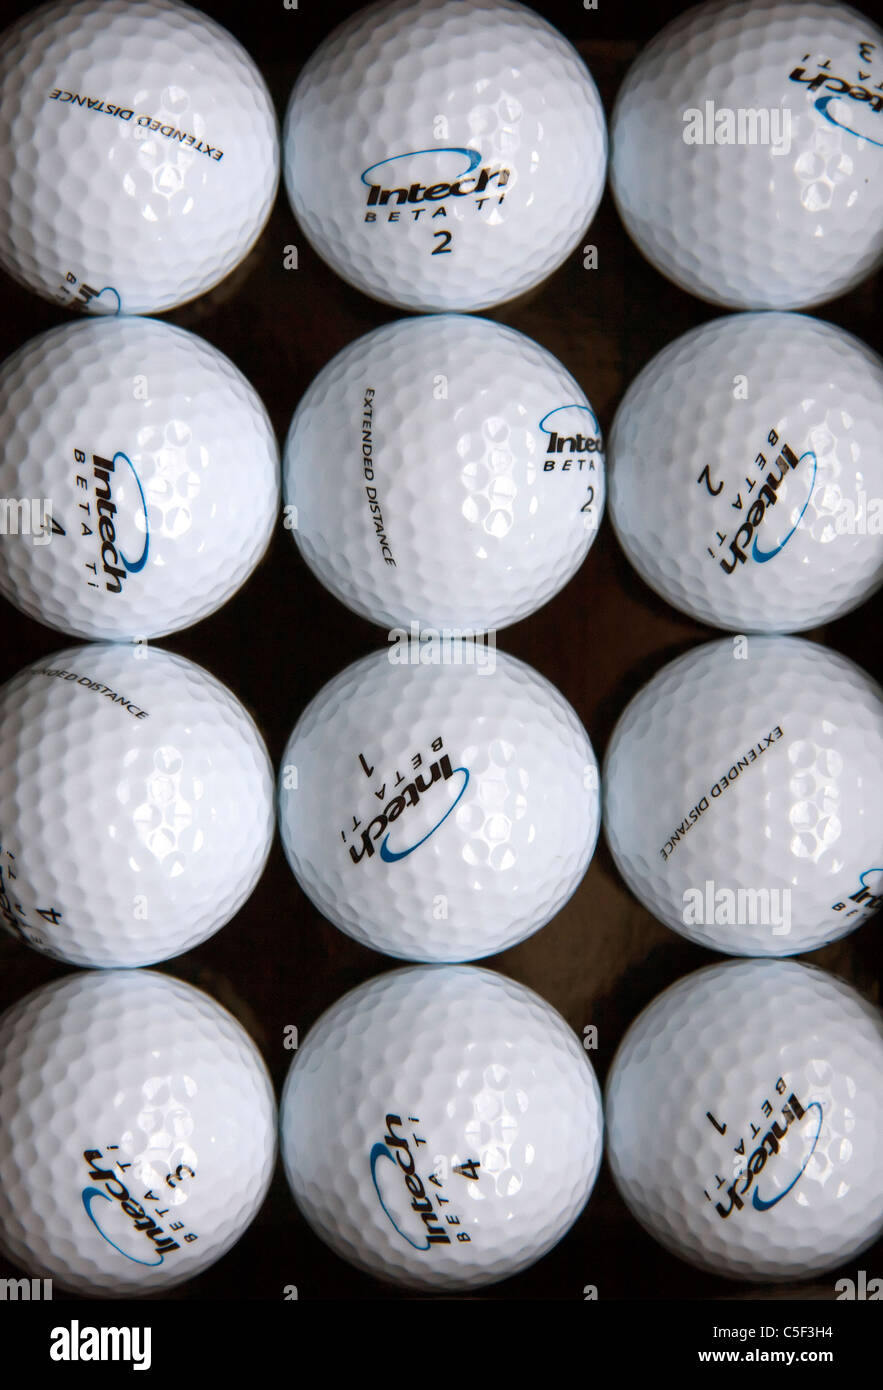 Ein Golf-Themen abstrakte Stilleben, bestehend aus einem Dutzend glänzende neue  Golfbälle, symmetrisch gruppiert in Reihen Stockfotografie - Alamy